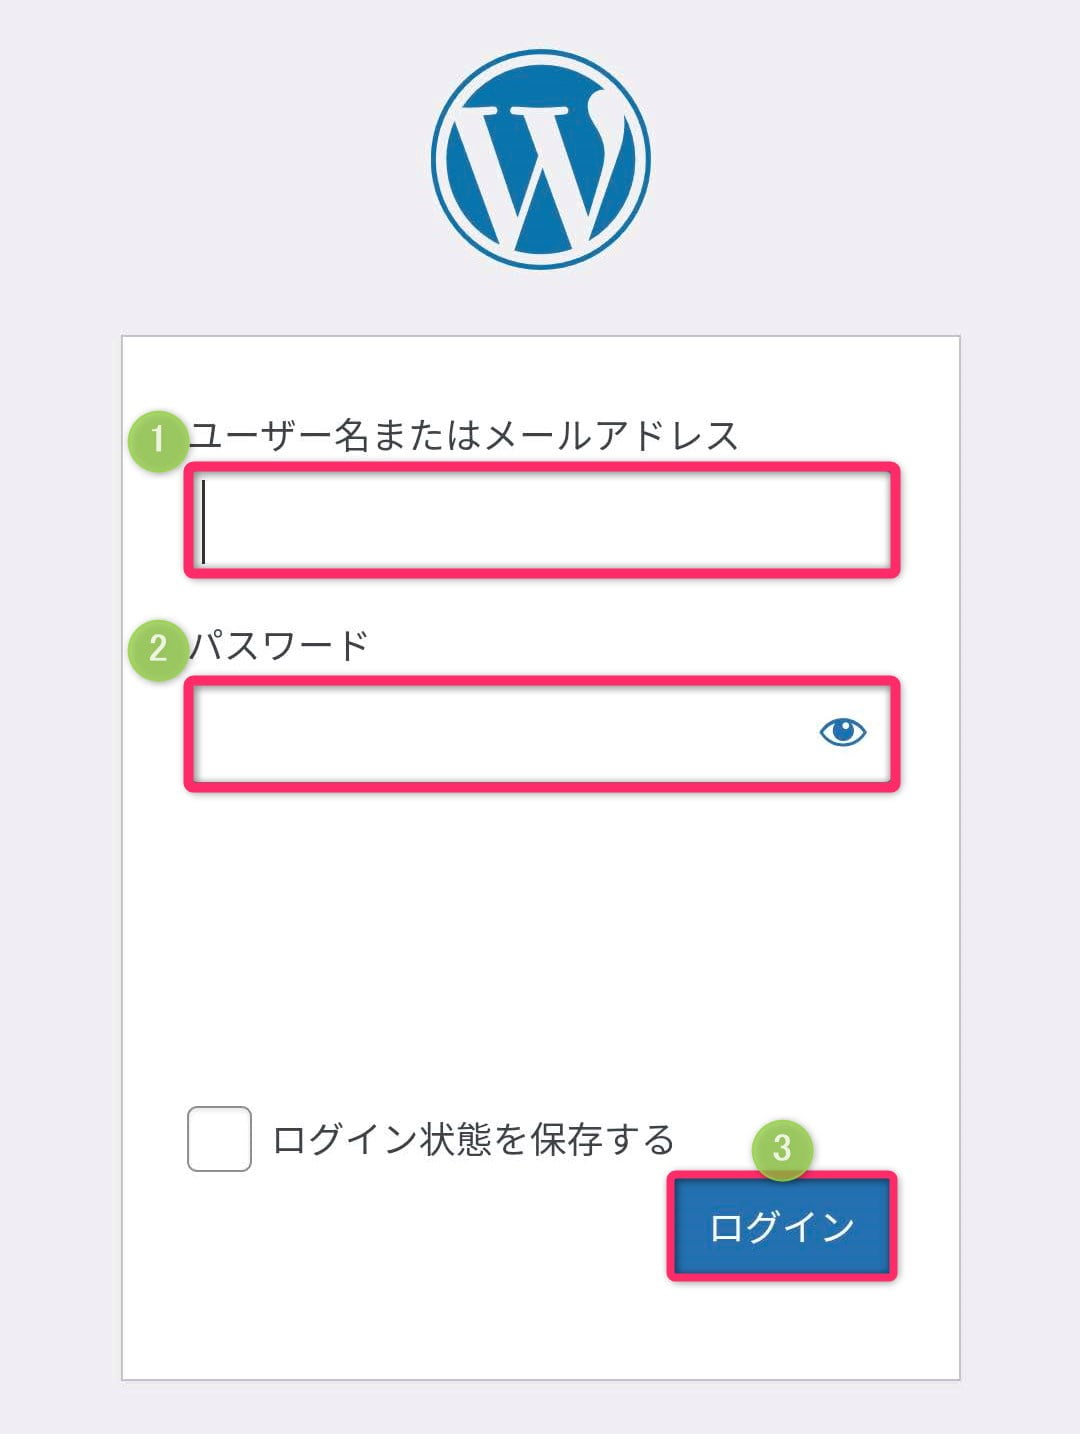 WordPress管理画面はログインする「ユーザー名またはメールアドレス」と「パスワード」を入力して「ログイン」をクリック